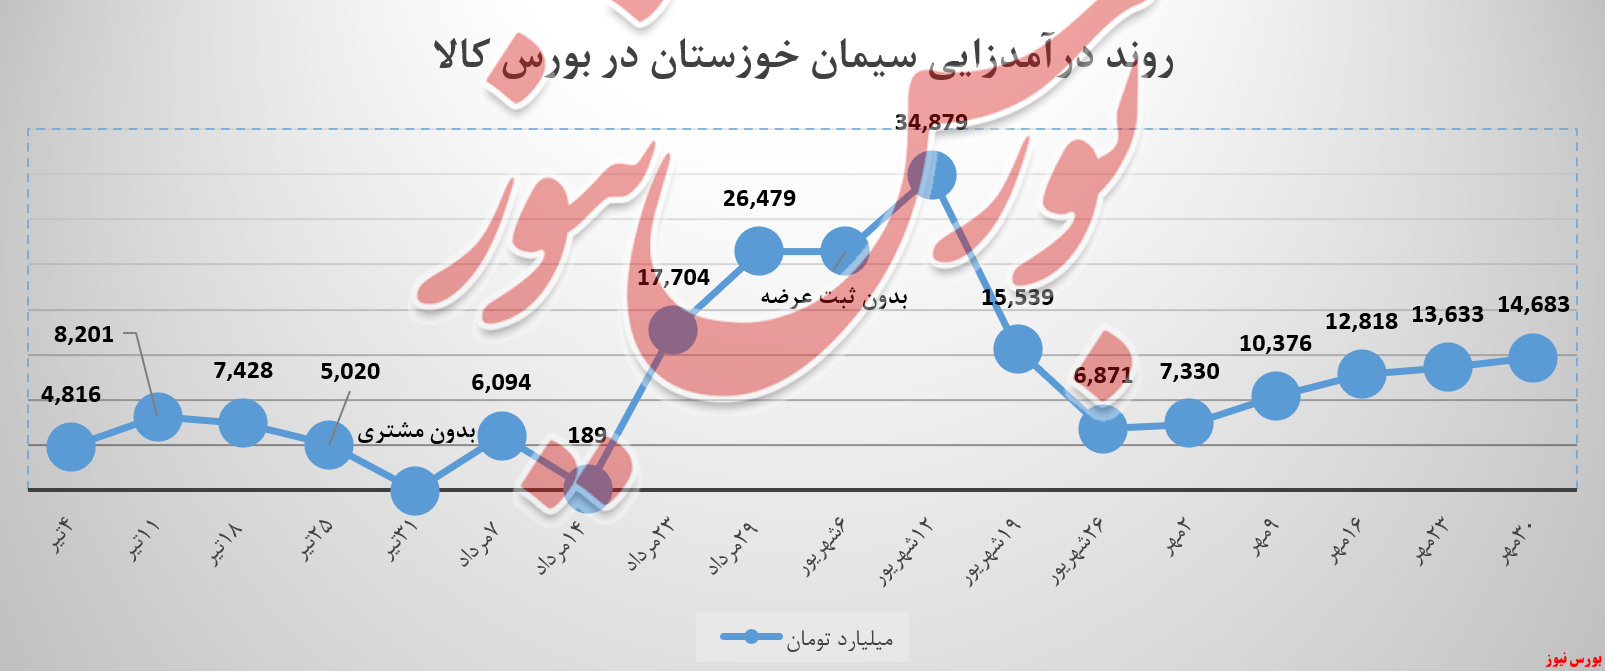 درآمد سیمان خوزستان با رشد میلیاردی همراه شد